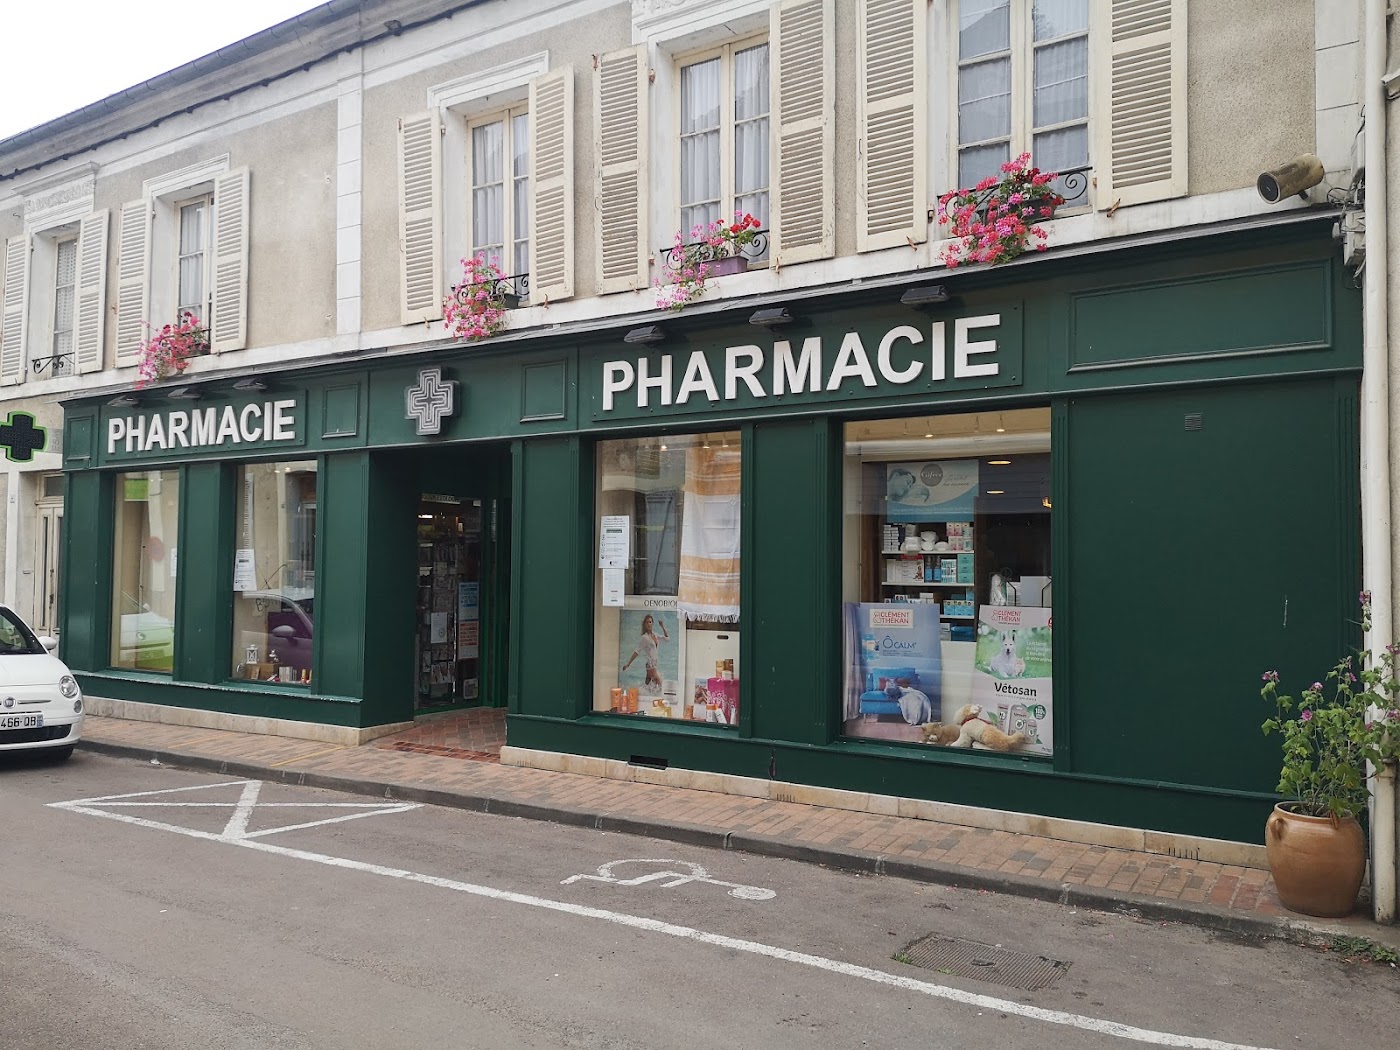 Pharmacie de la Roche